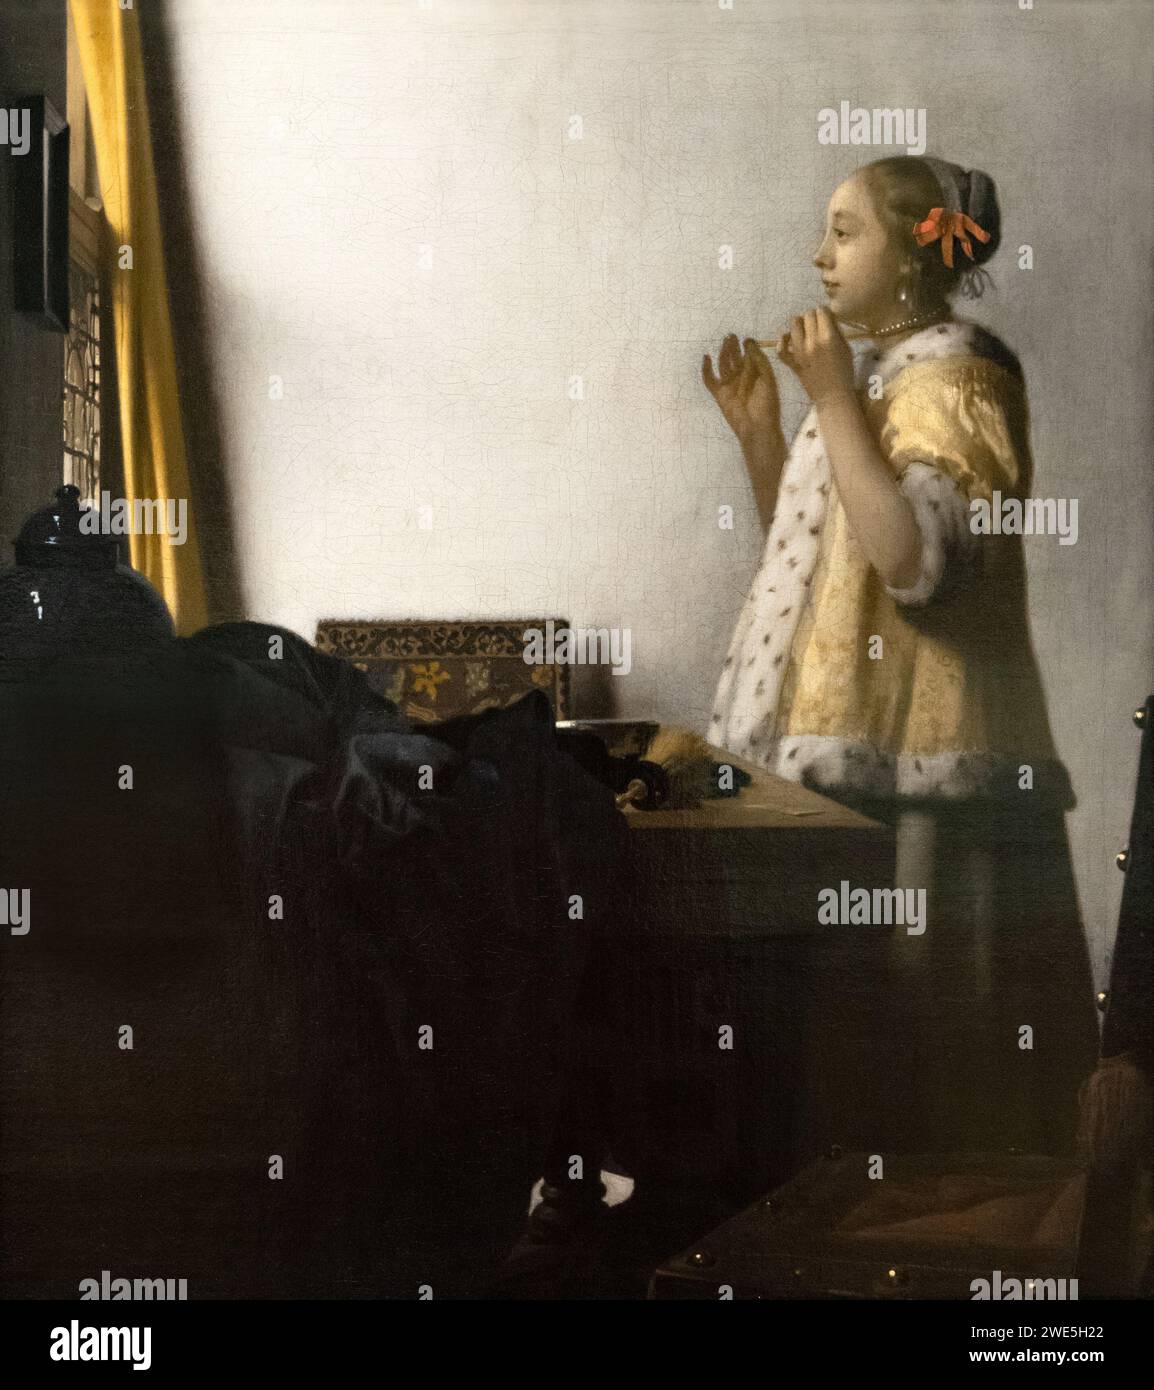 Johannes Vermeer Gemälde; 'Frau mit Perlenkette' oder 'die Perlenkette', 1664, Öl auf Leinwand, niederländisches Goldenes Zeitalter-Gemälde aus dem 17. Jahrhundert Stockfoto